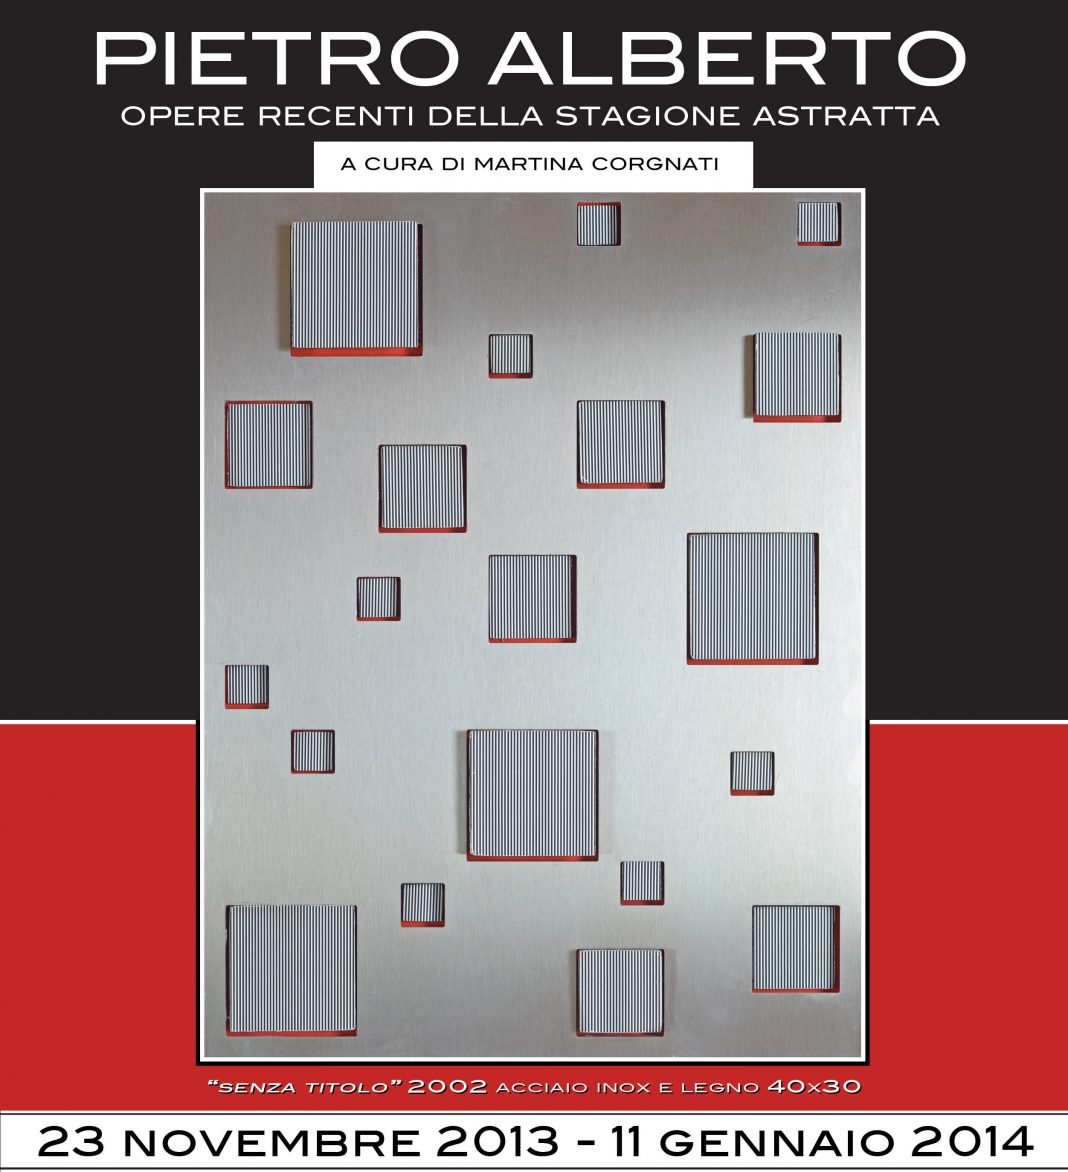 Pietro Alberto – Opere recenti della stagione astrattahttps://www.exibart.com/repository/media/eventi/2013/11/pietro-alberto-8211-opere-recenti-della-stagione-astratta-1068x1172.jpg